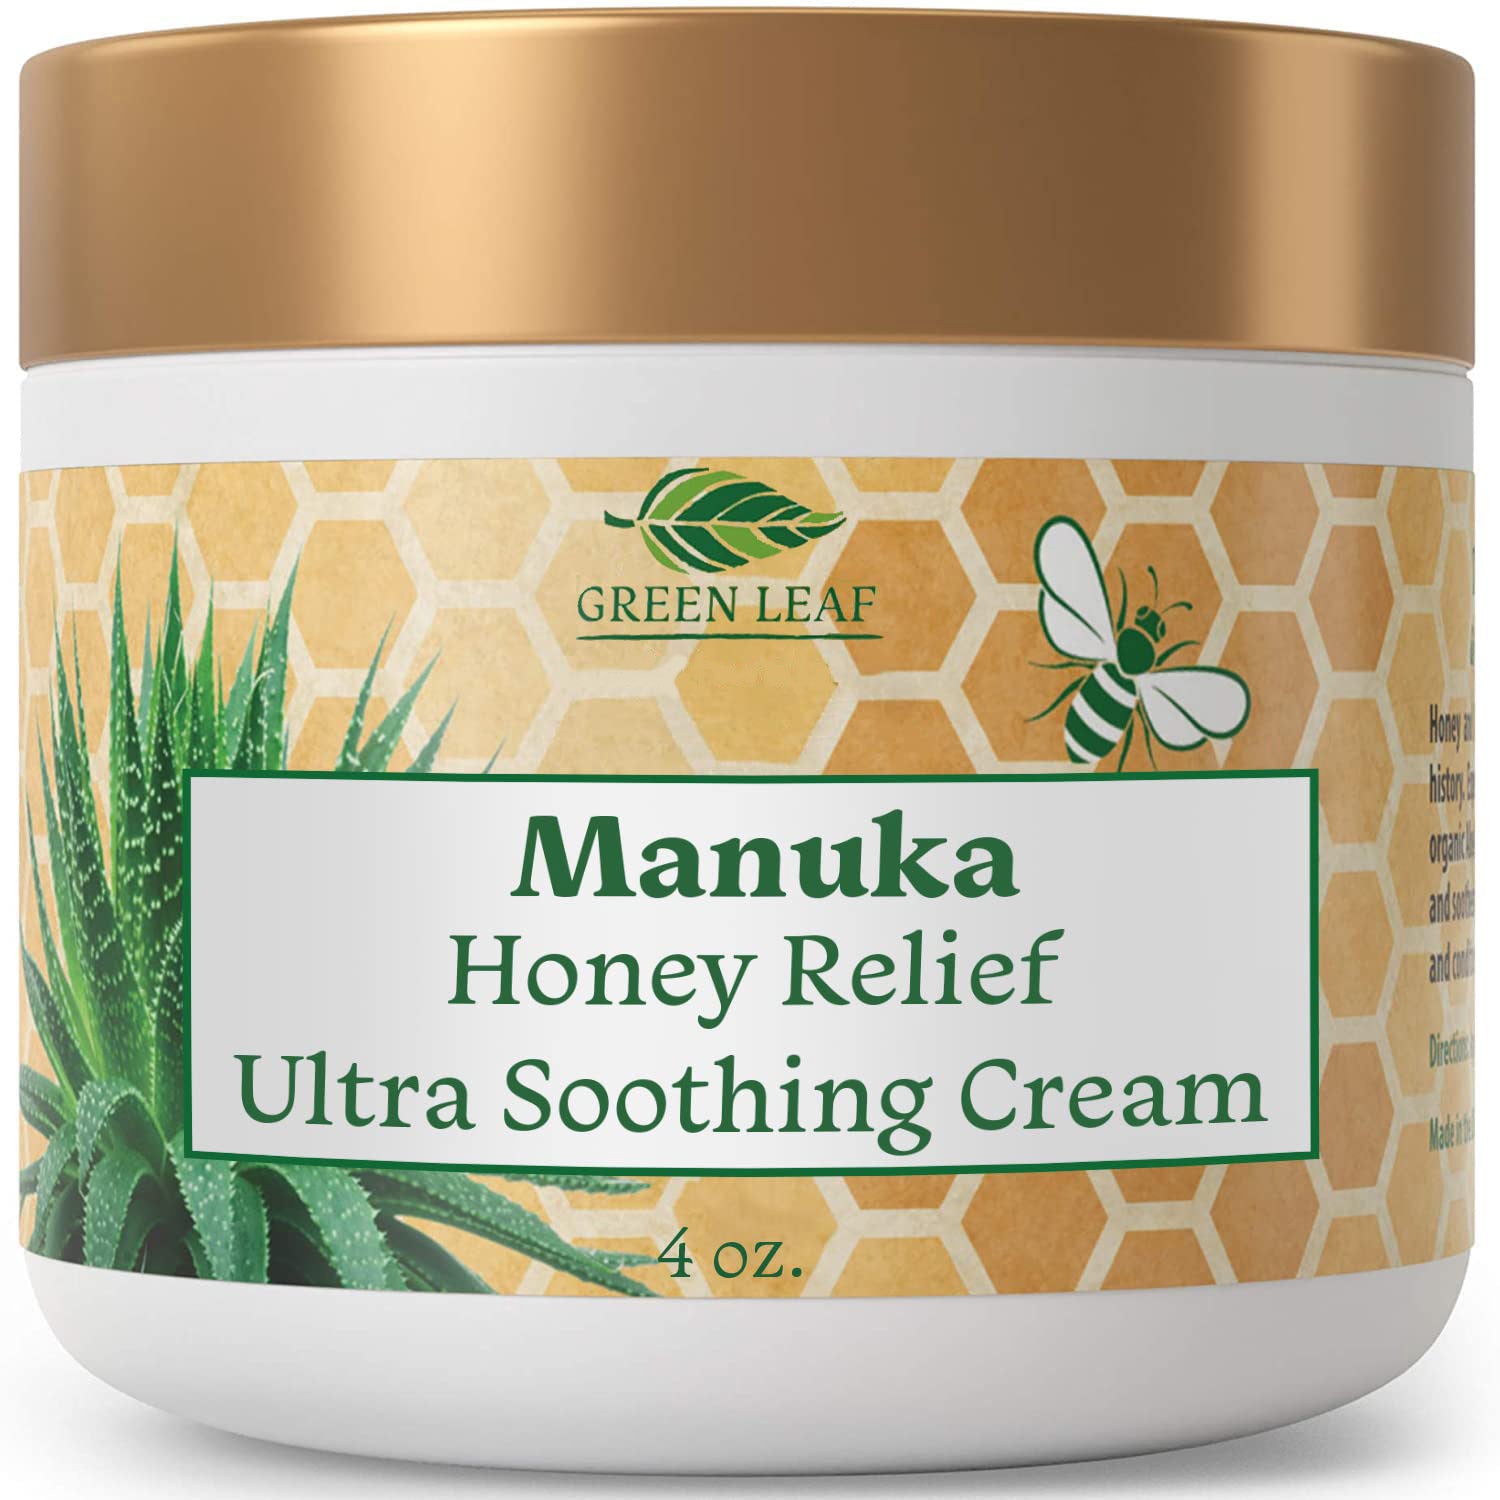 Manuka Honey Moisturizing Cream by Amazing Aloe Vera – Green Leaf